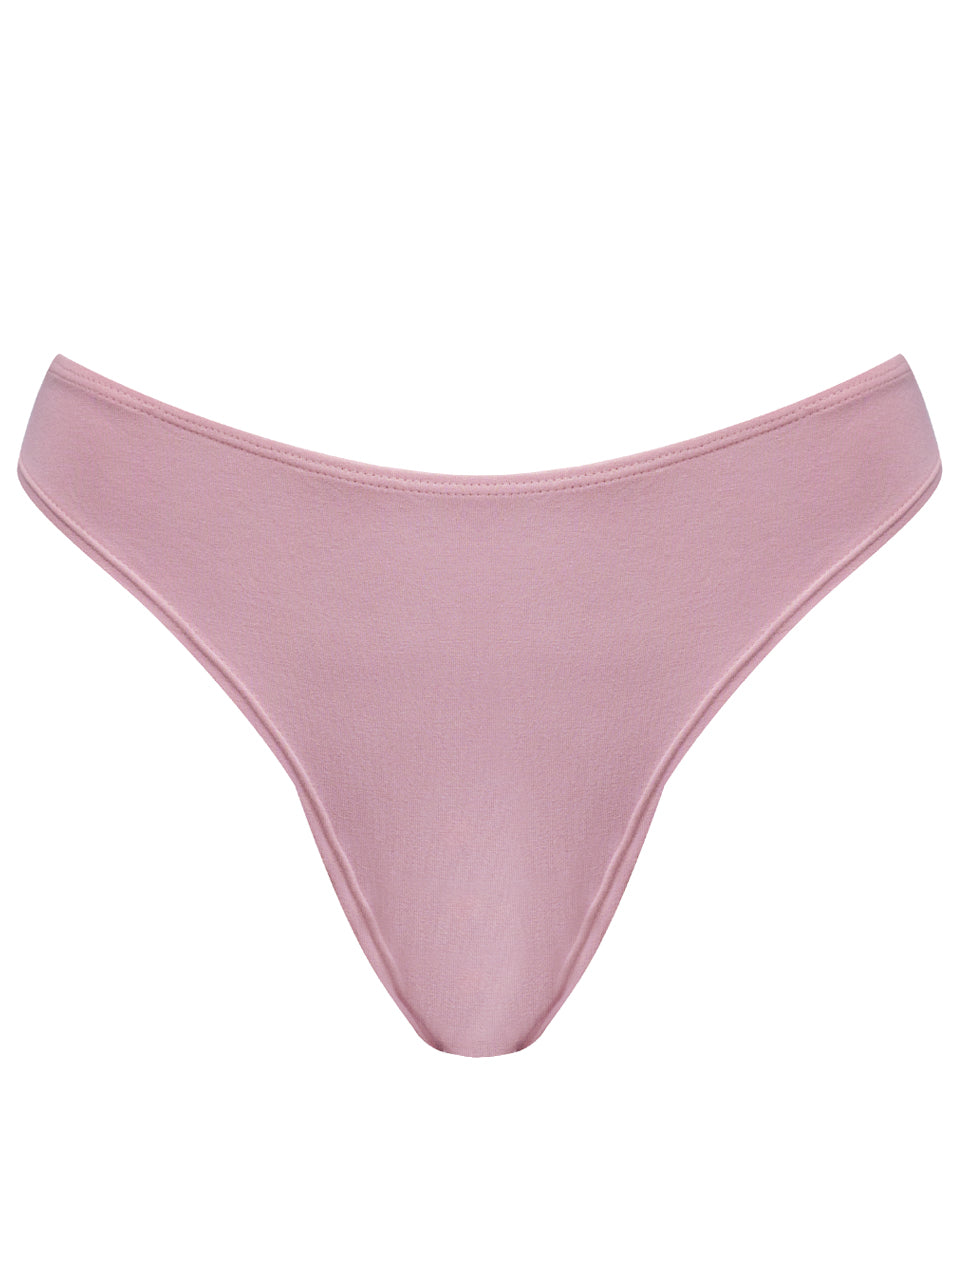 Women's basic brief pink underwear